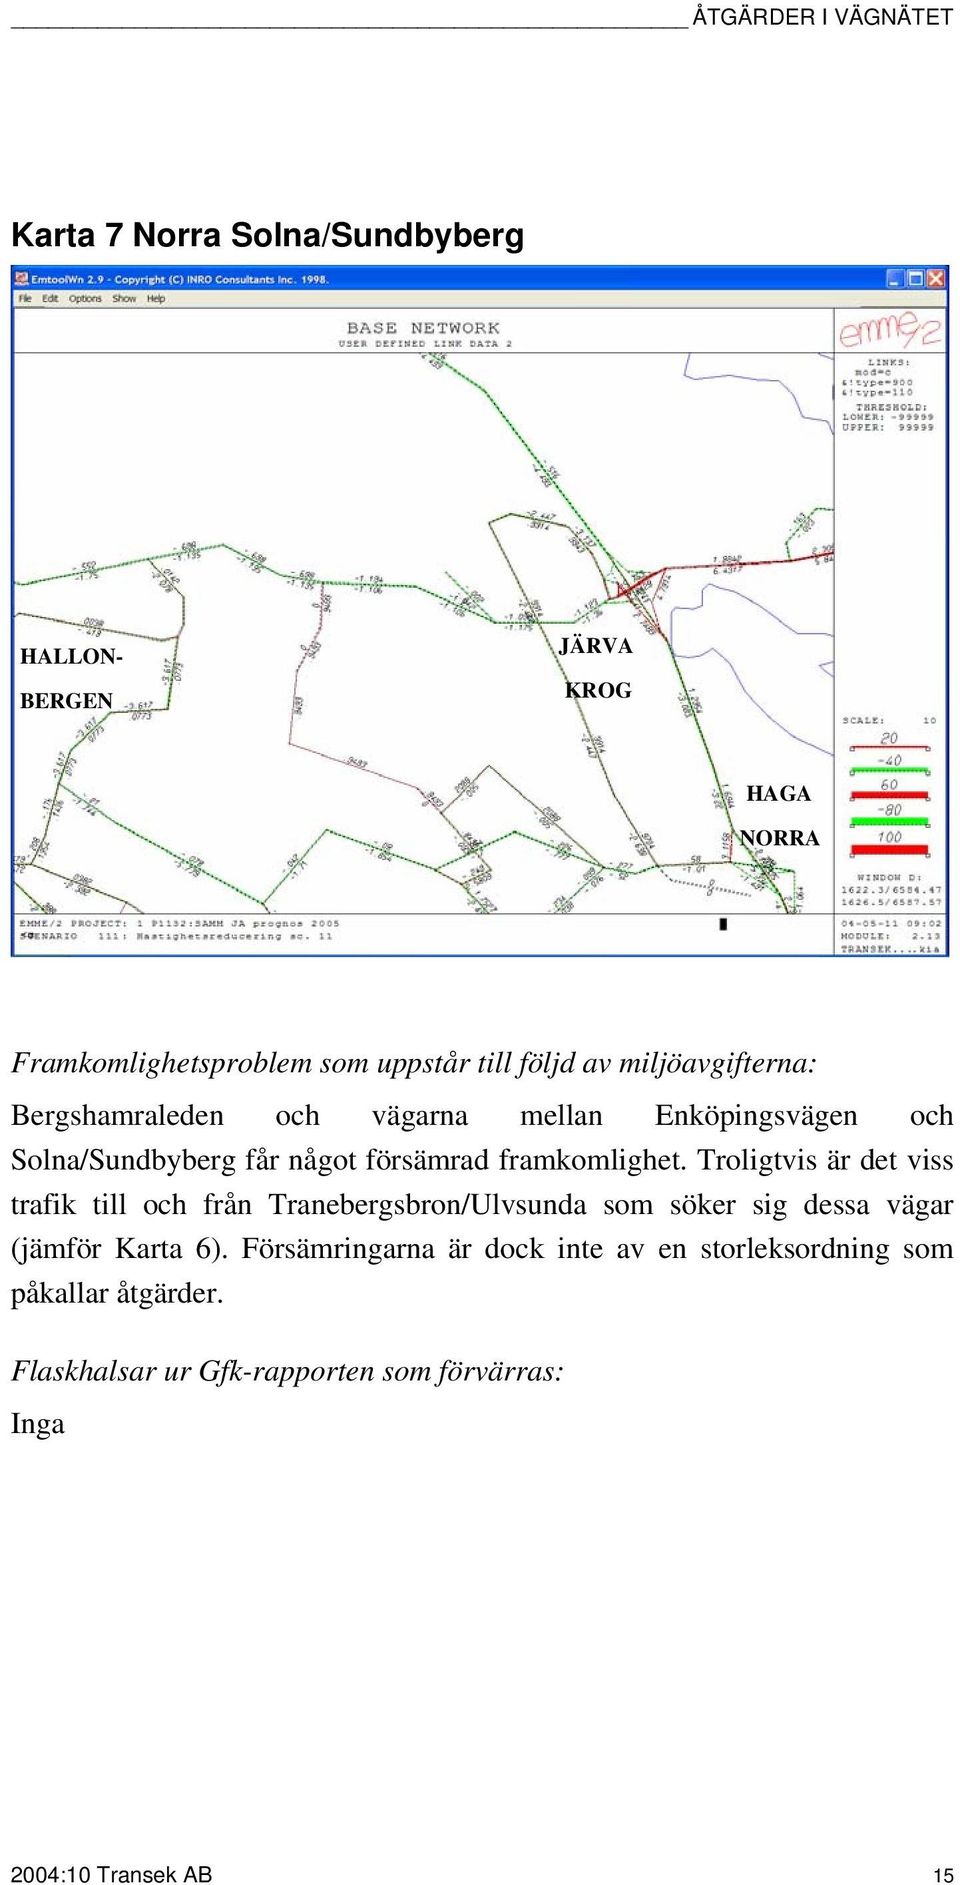 Troligtvis är det viss trafik till och från Tranebergsbron/Ulvsunda som söker sig dessa vägar (jämför Karta 6).